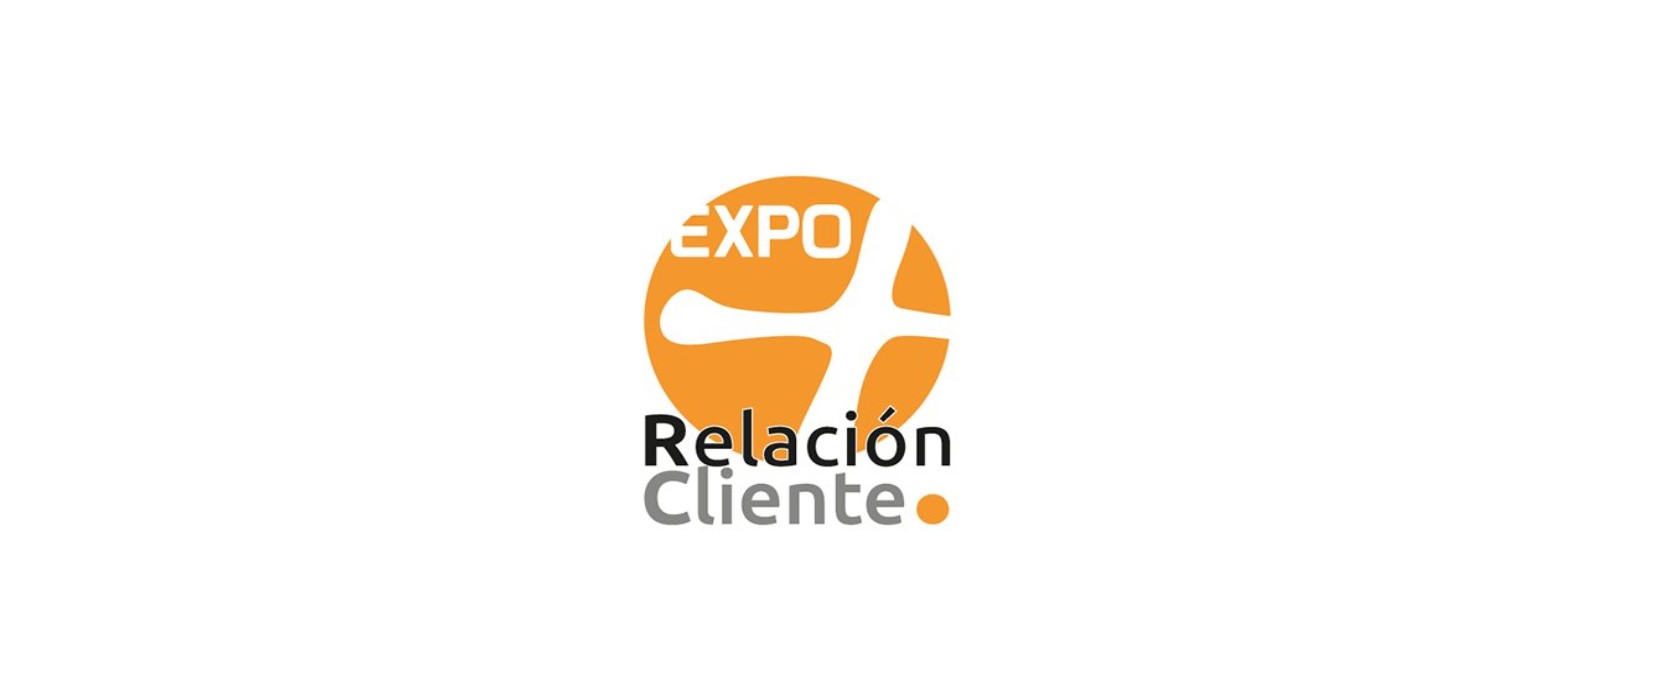 Numintec participará en ‘Expo Relación Cliente’, el mayor evento profesional del sector Call Center